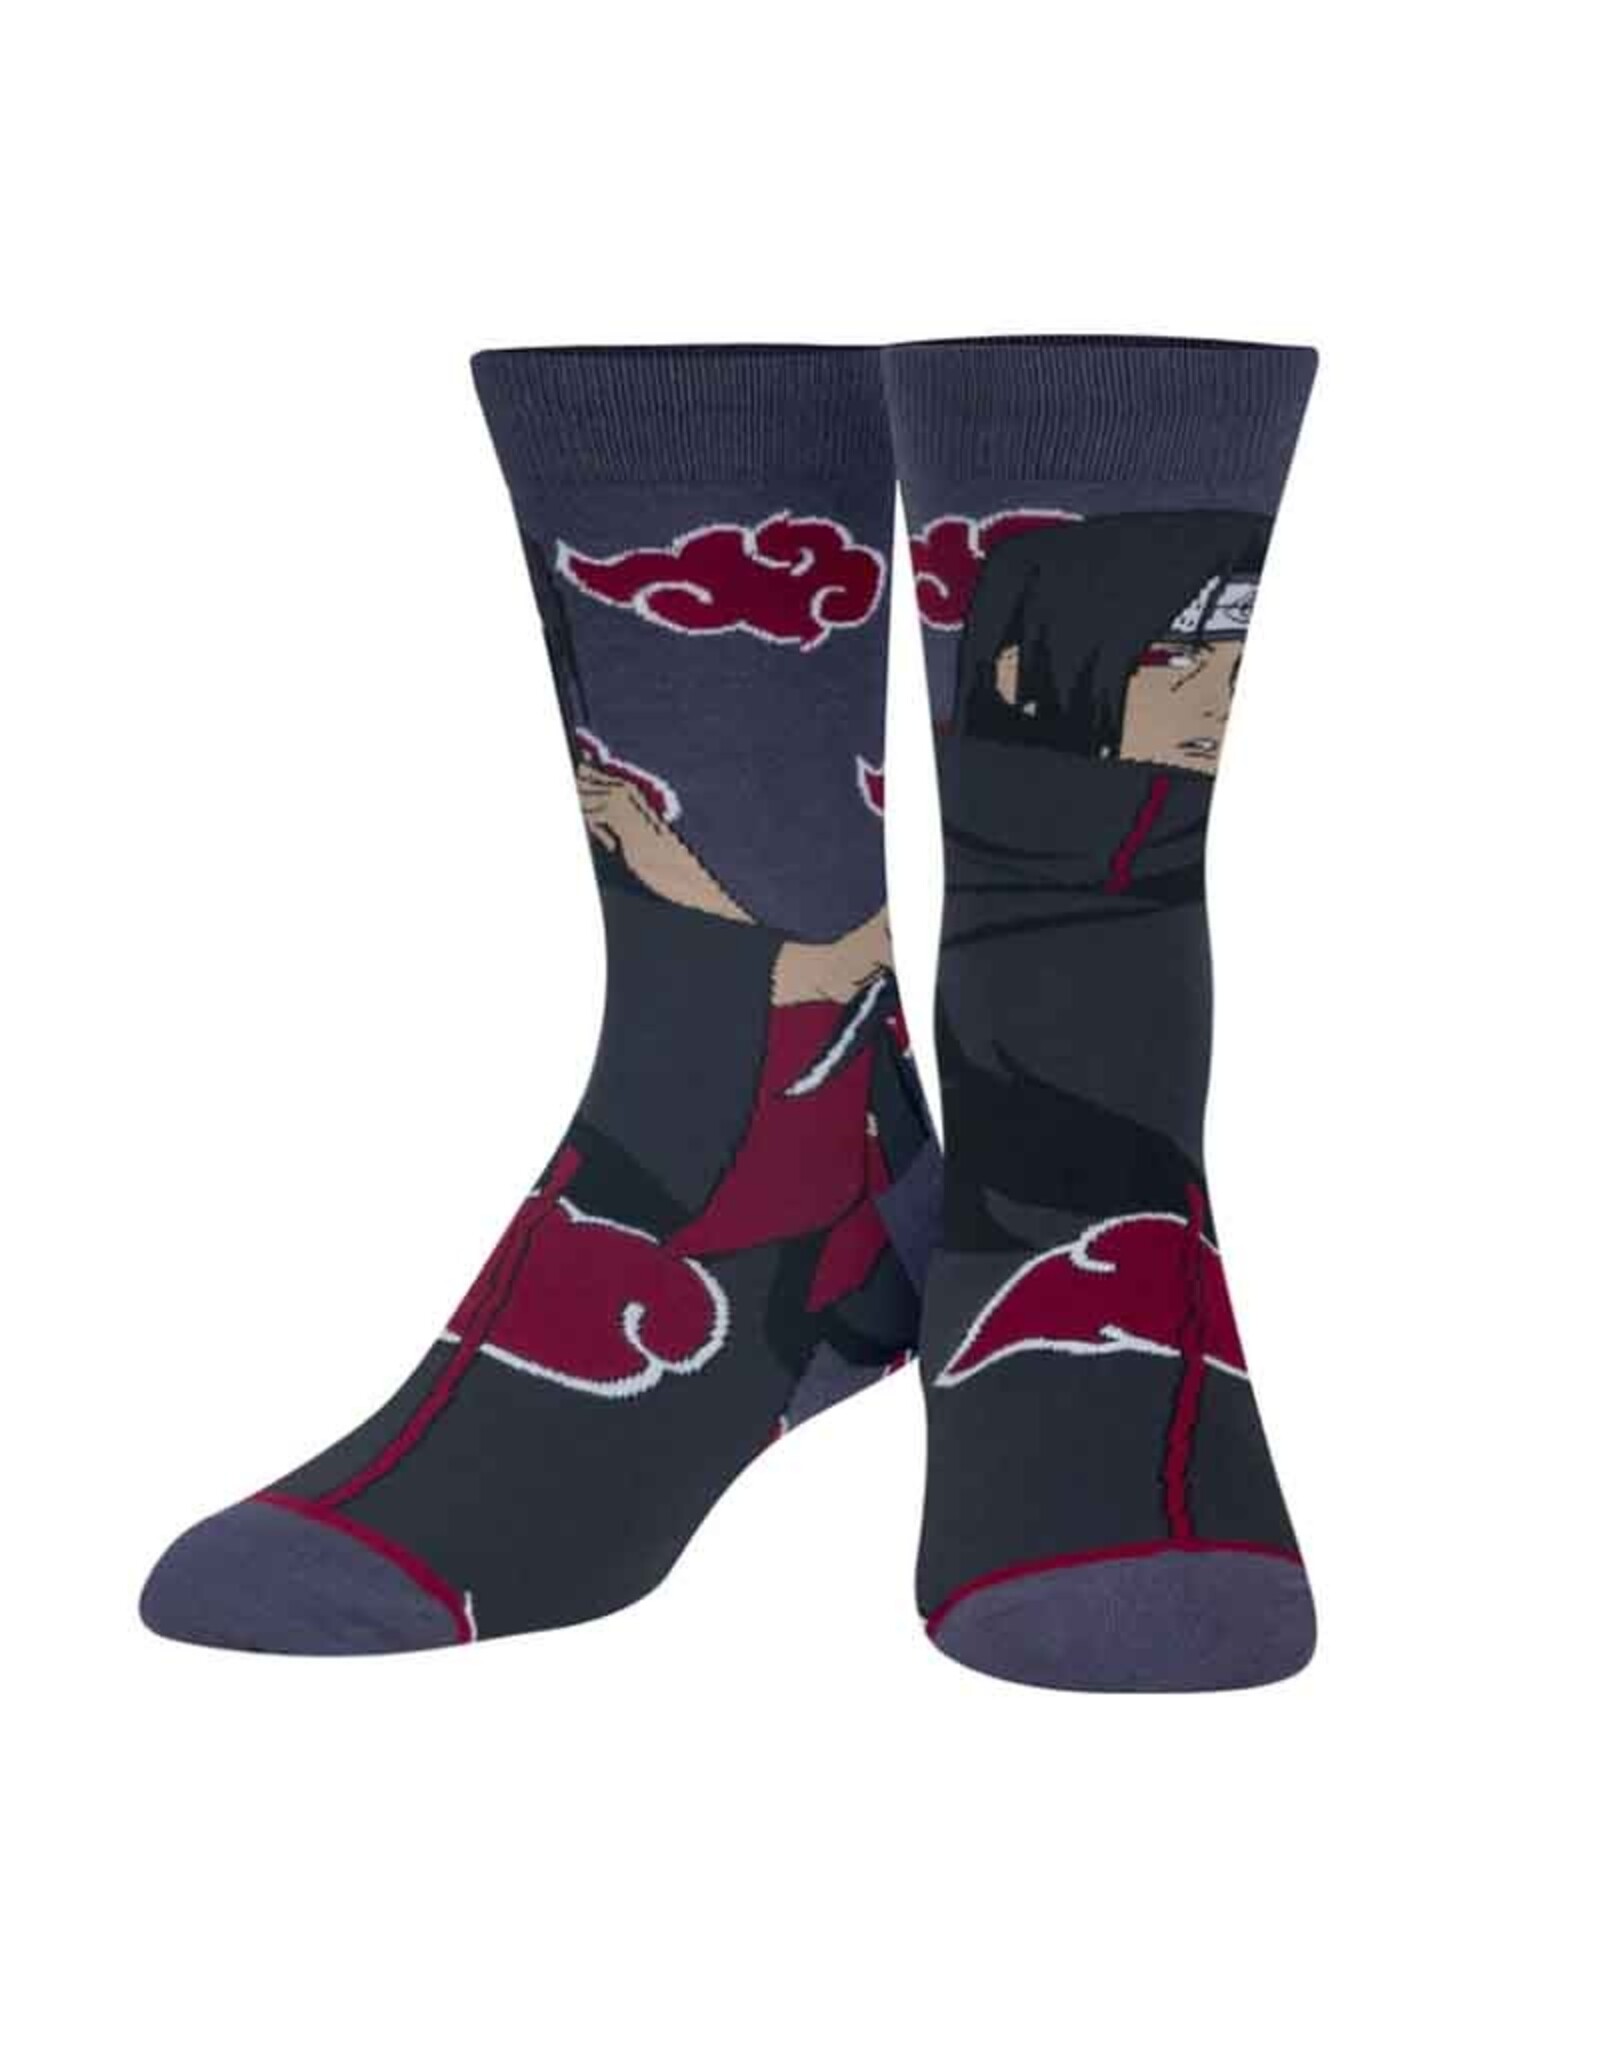 Odd Sox Odd Sox: Itachi Socks